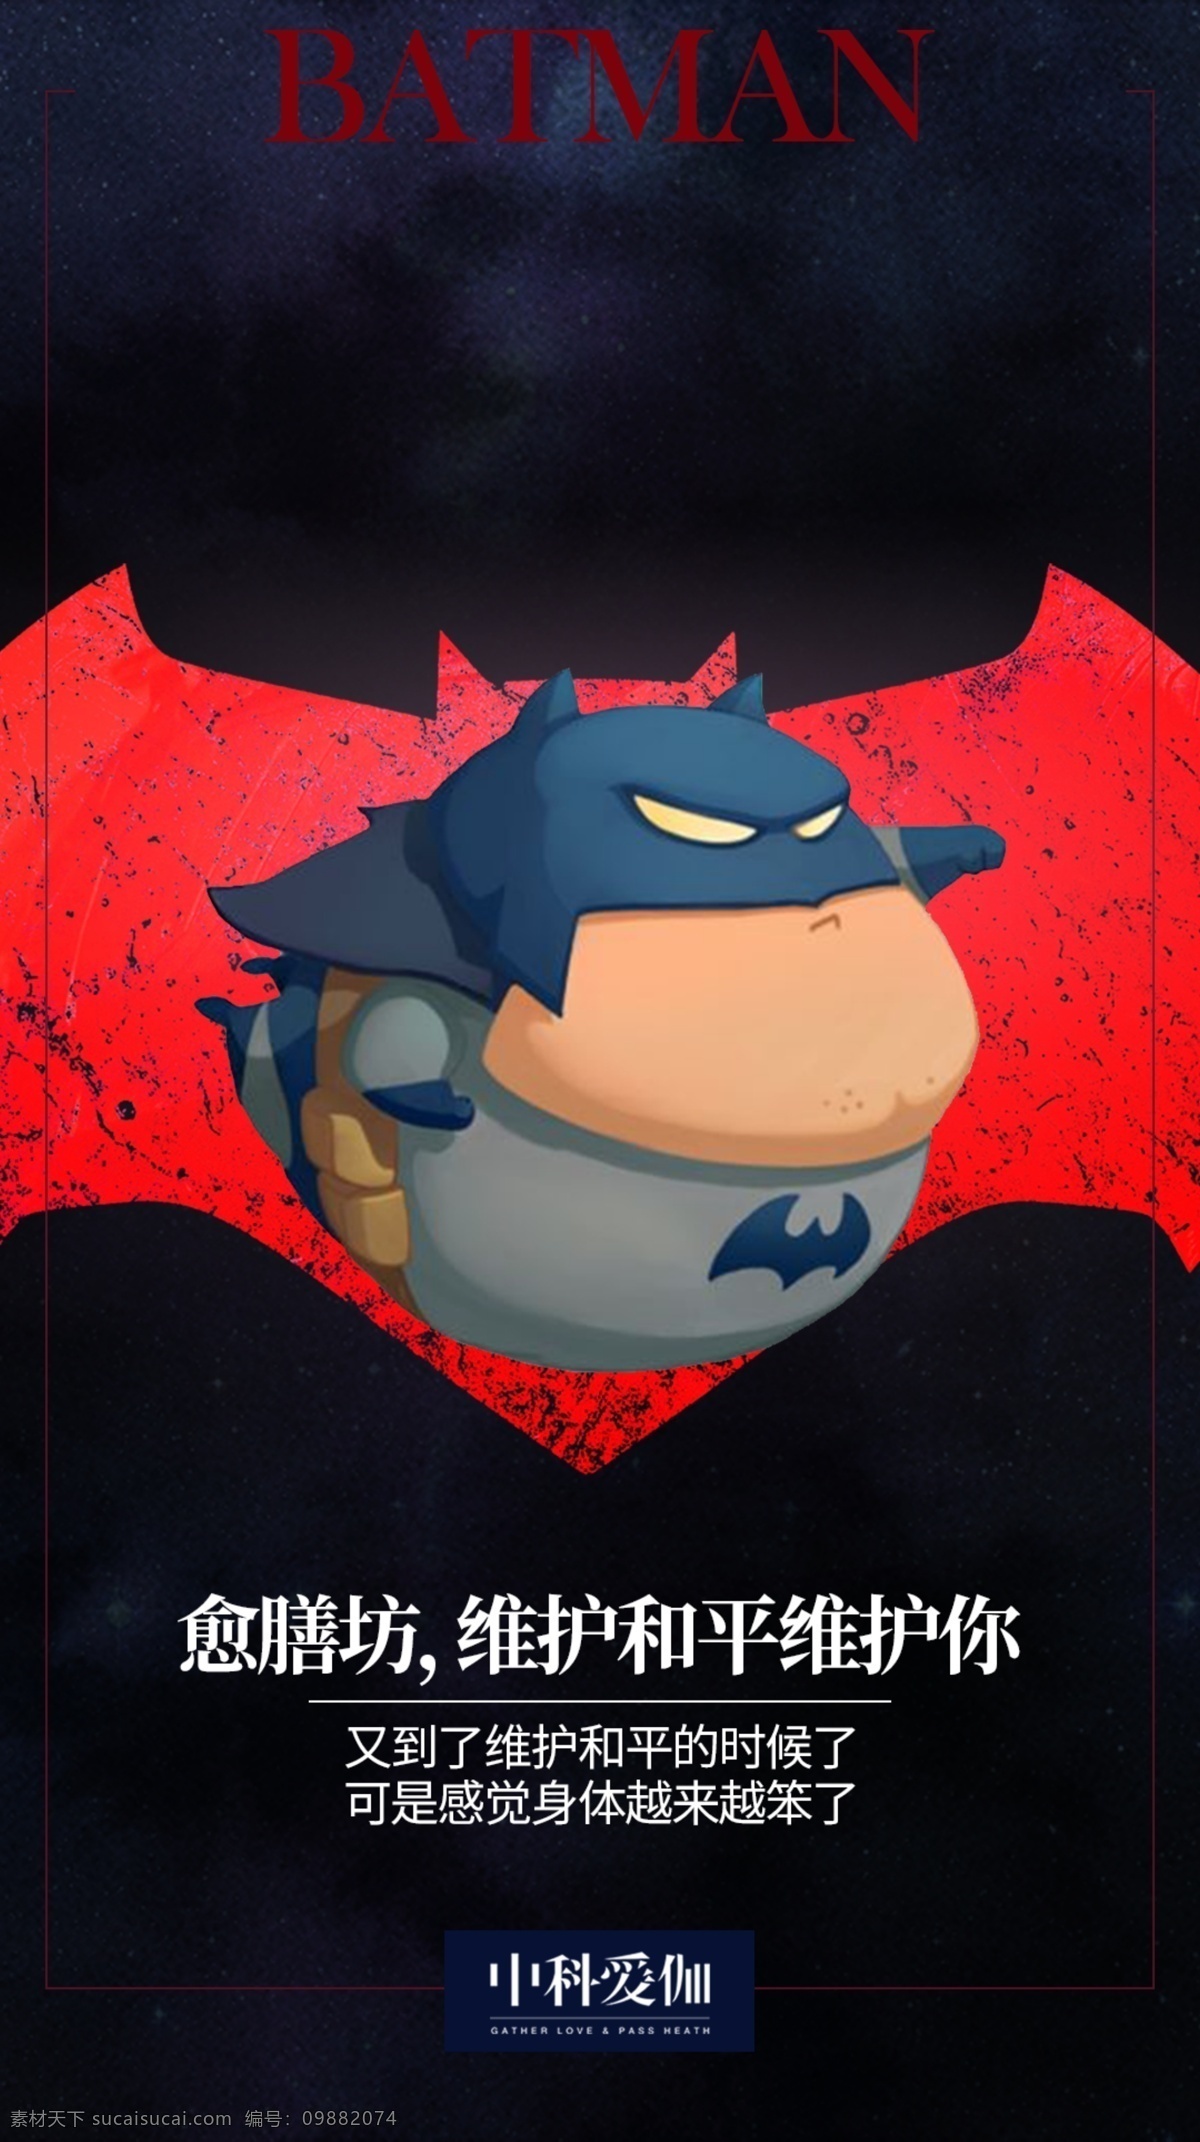 蝙蝠侠 维护 和平 海报 卡通 肥胖 可爱 蝙蝠 黑红 大气 正义 英文 搞笑